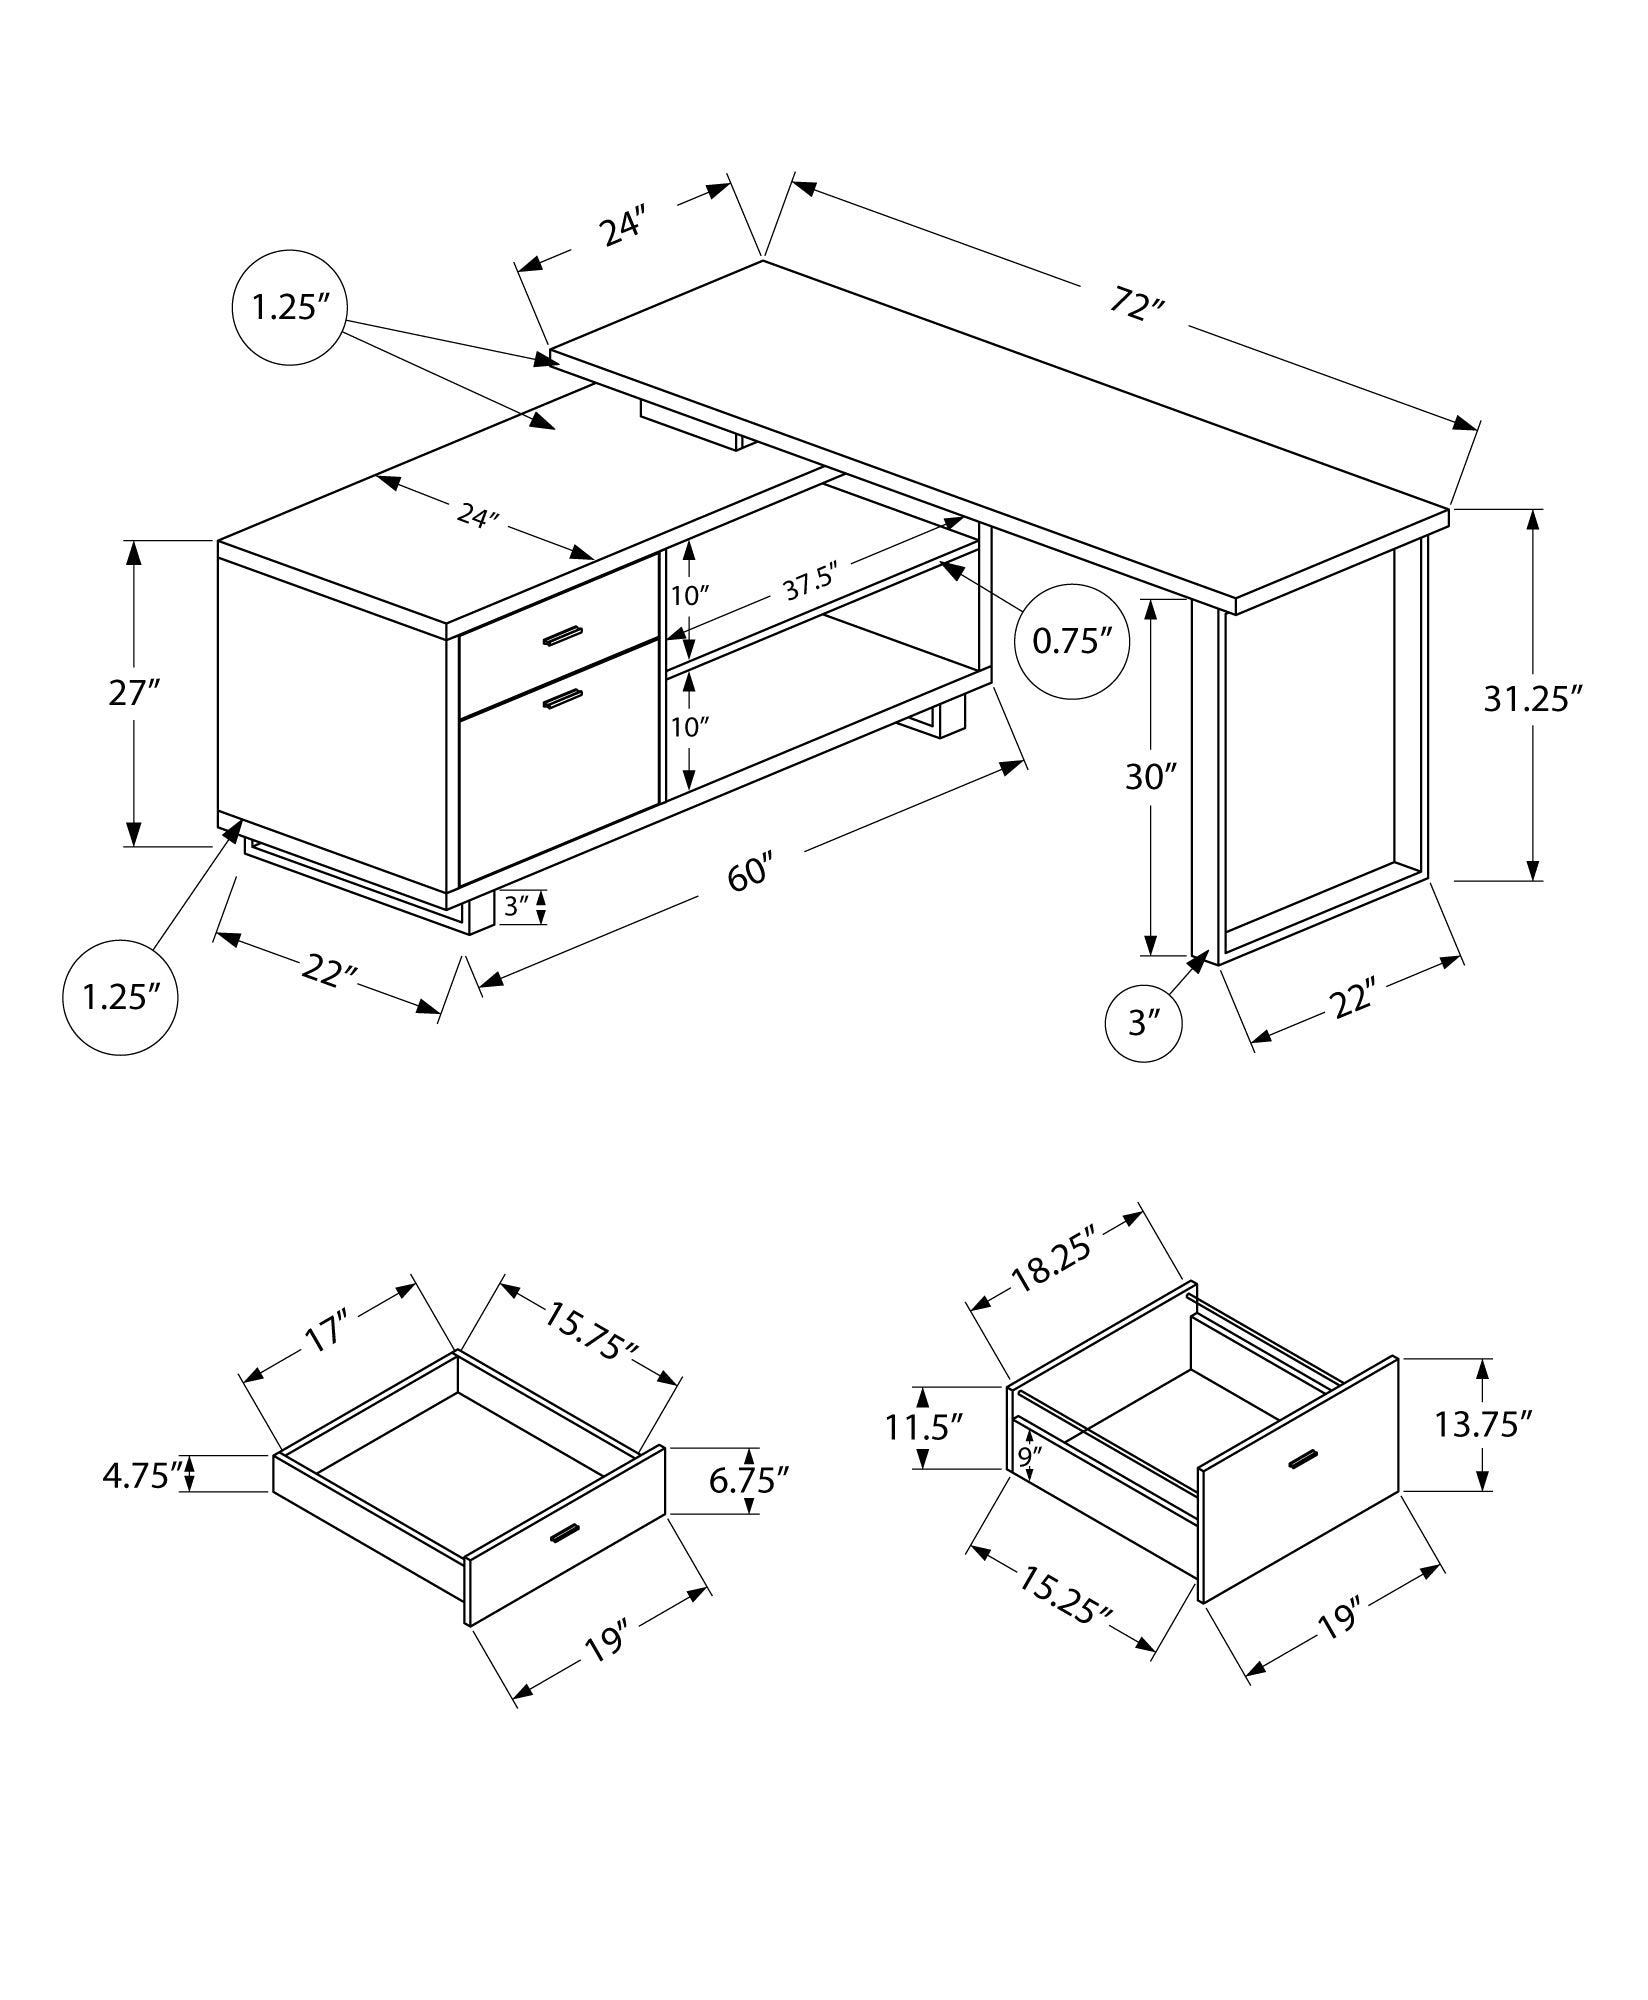 MN-917714    Computer Desk - L-Shaped / Corner / 2 Drawers / Metal Legs / Reversible - 72"L X 60"W - Grey Concrete / Black